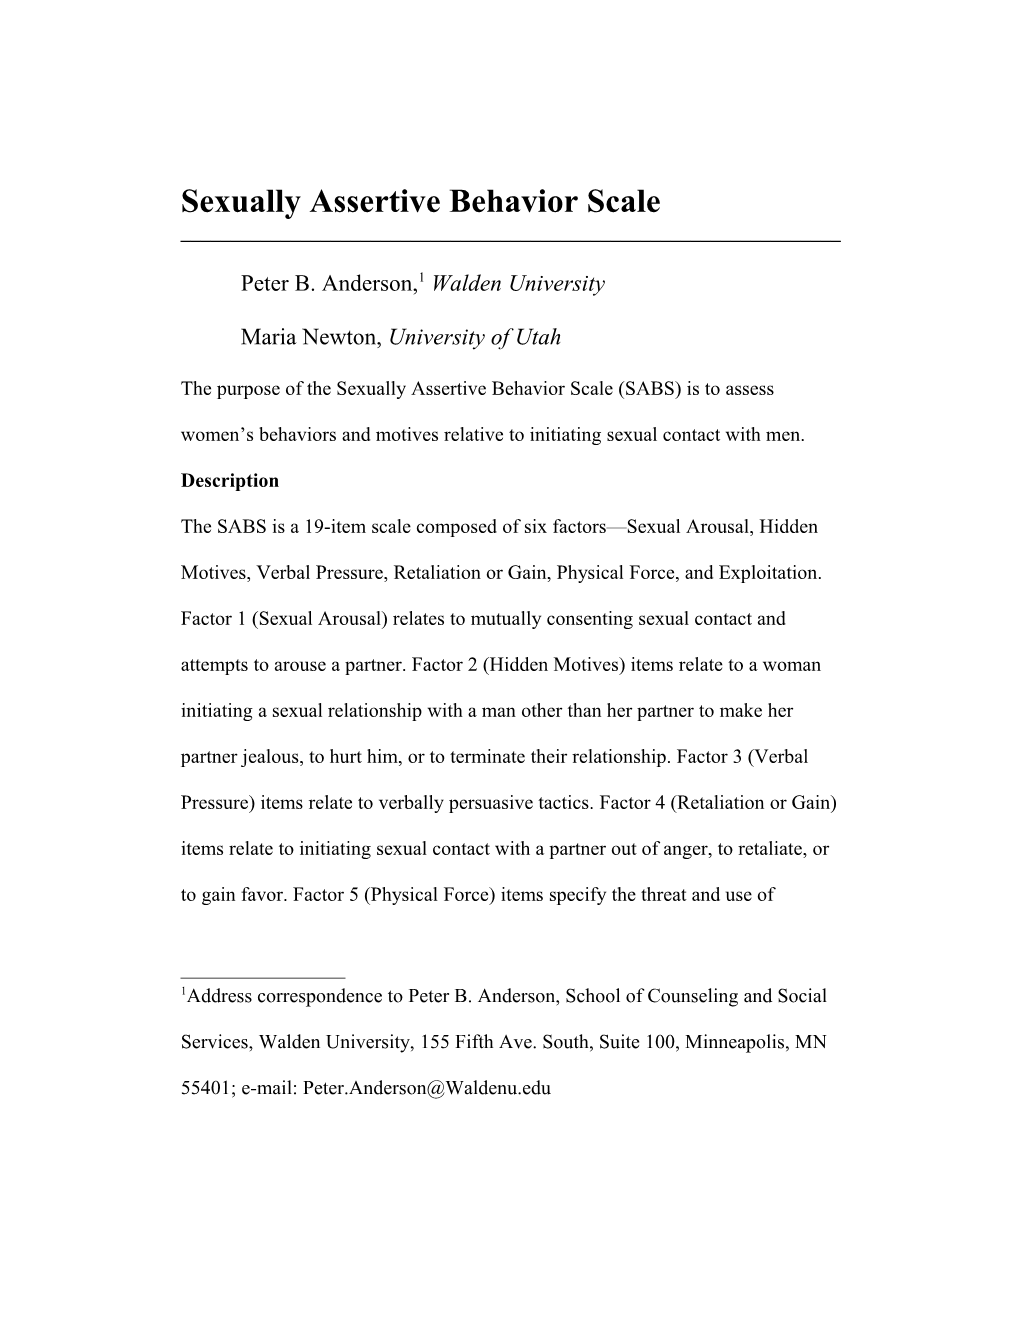 Sexual Attitudes Scale s1